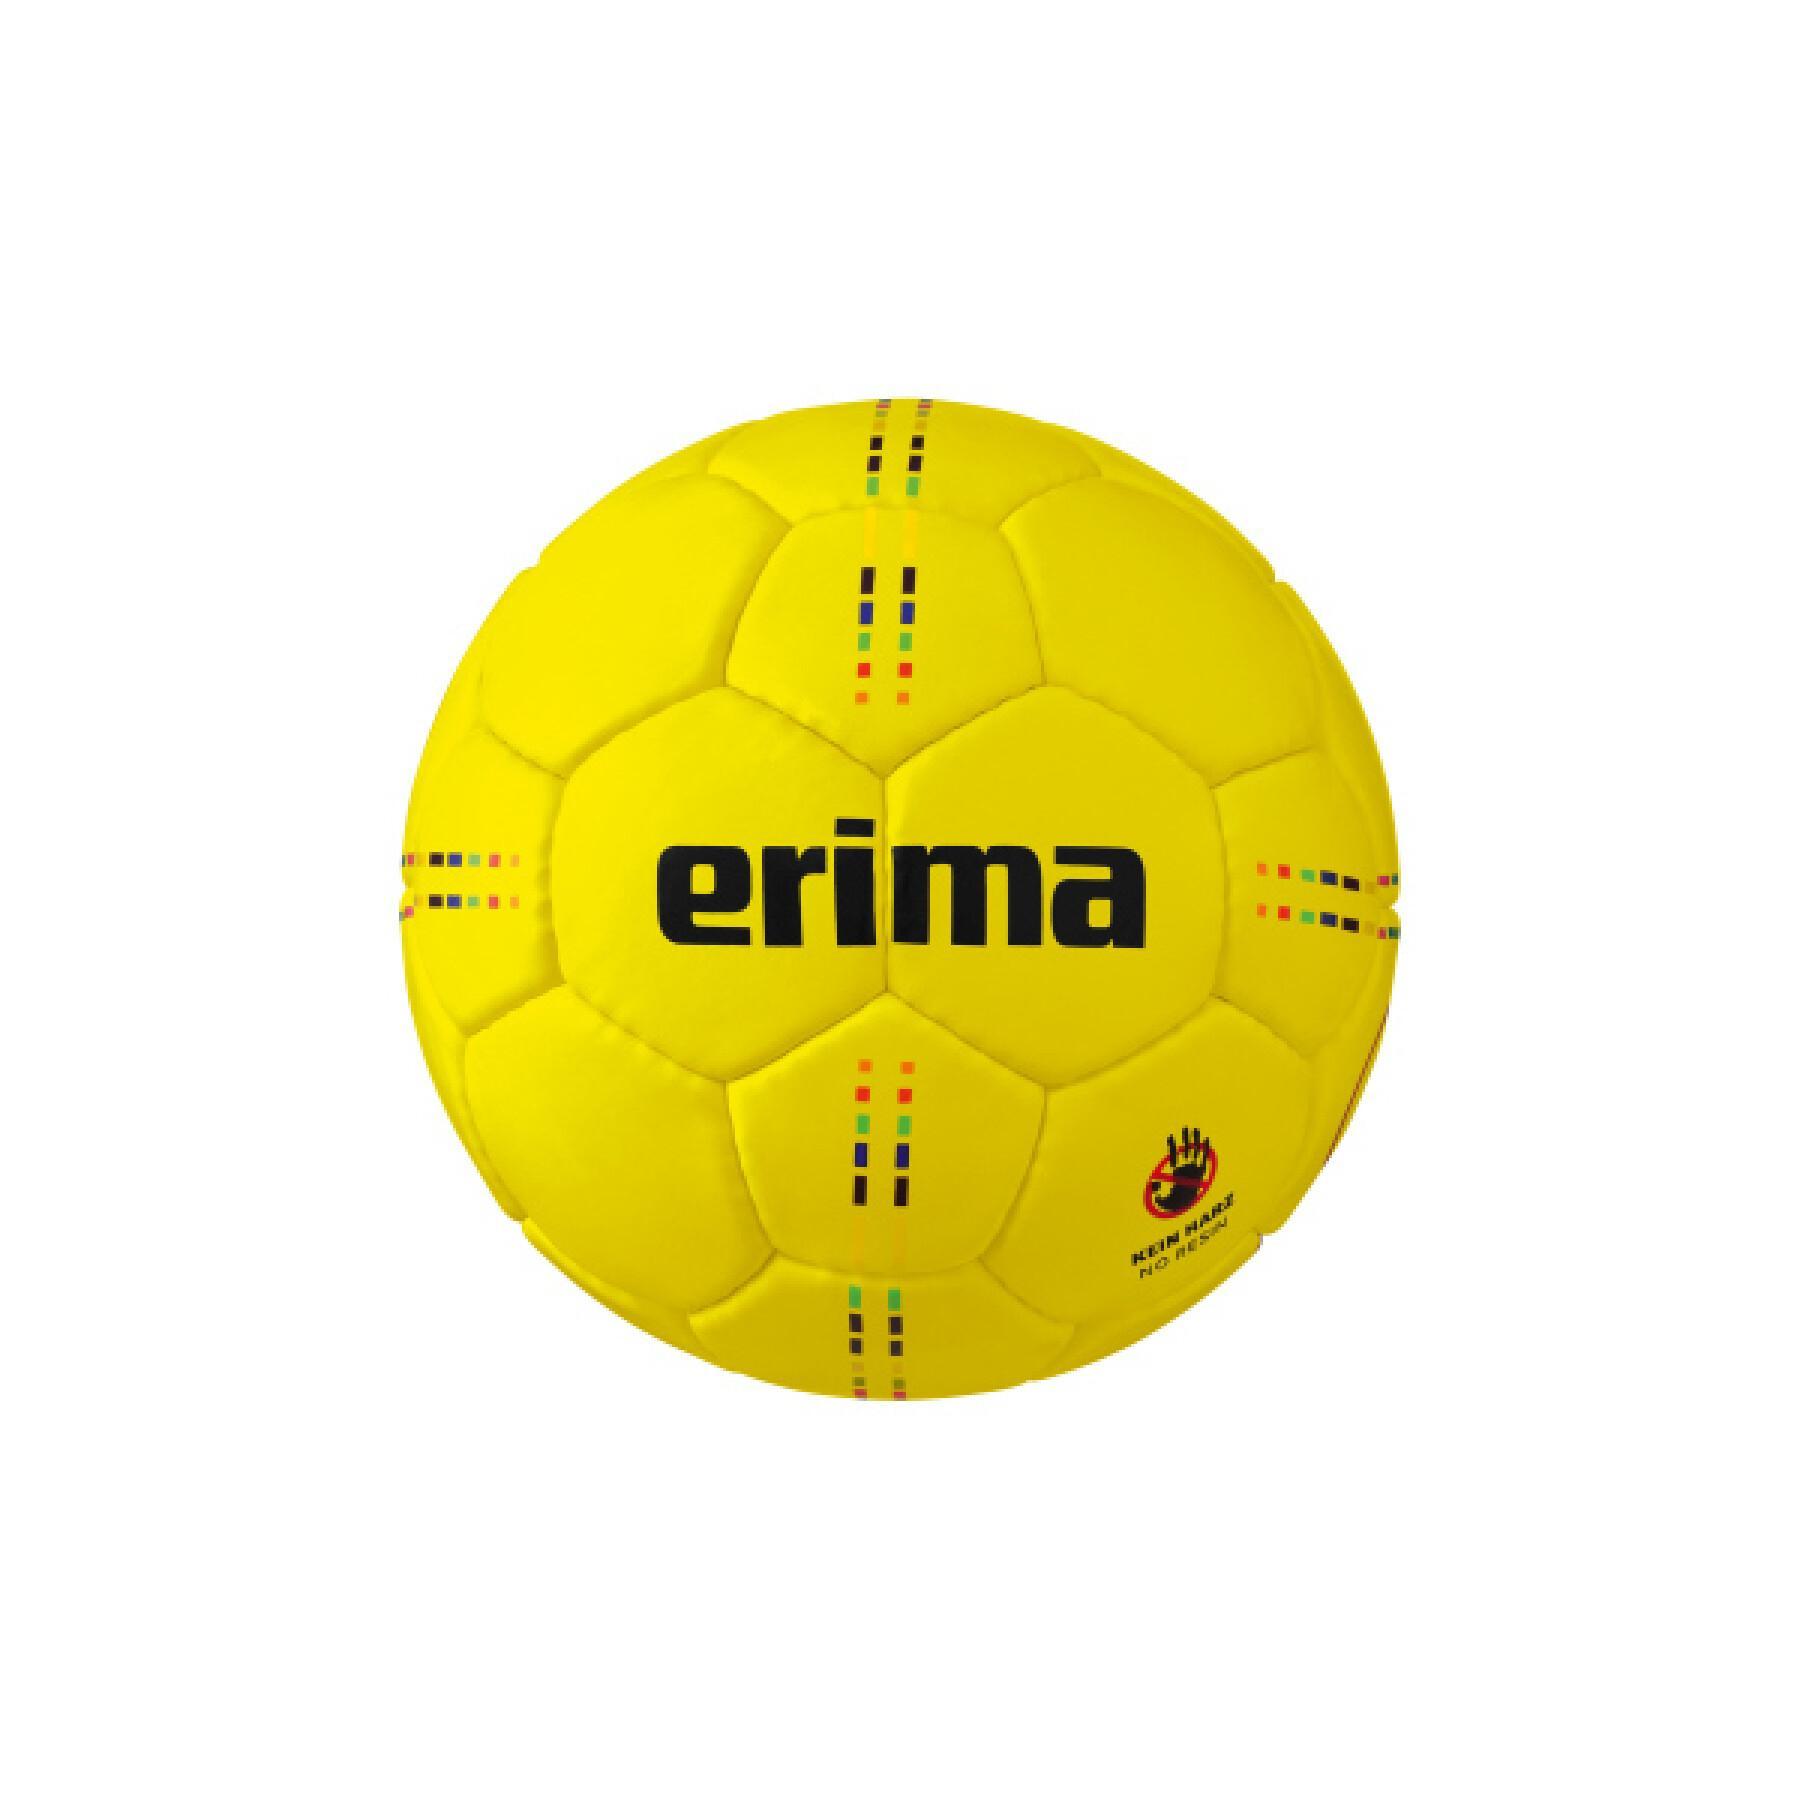 Balón sin resina Erima PURE GRIP No. 5